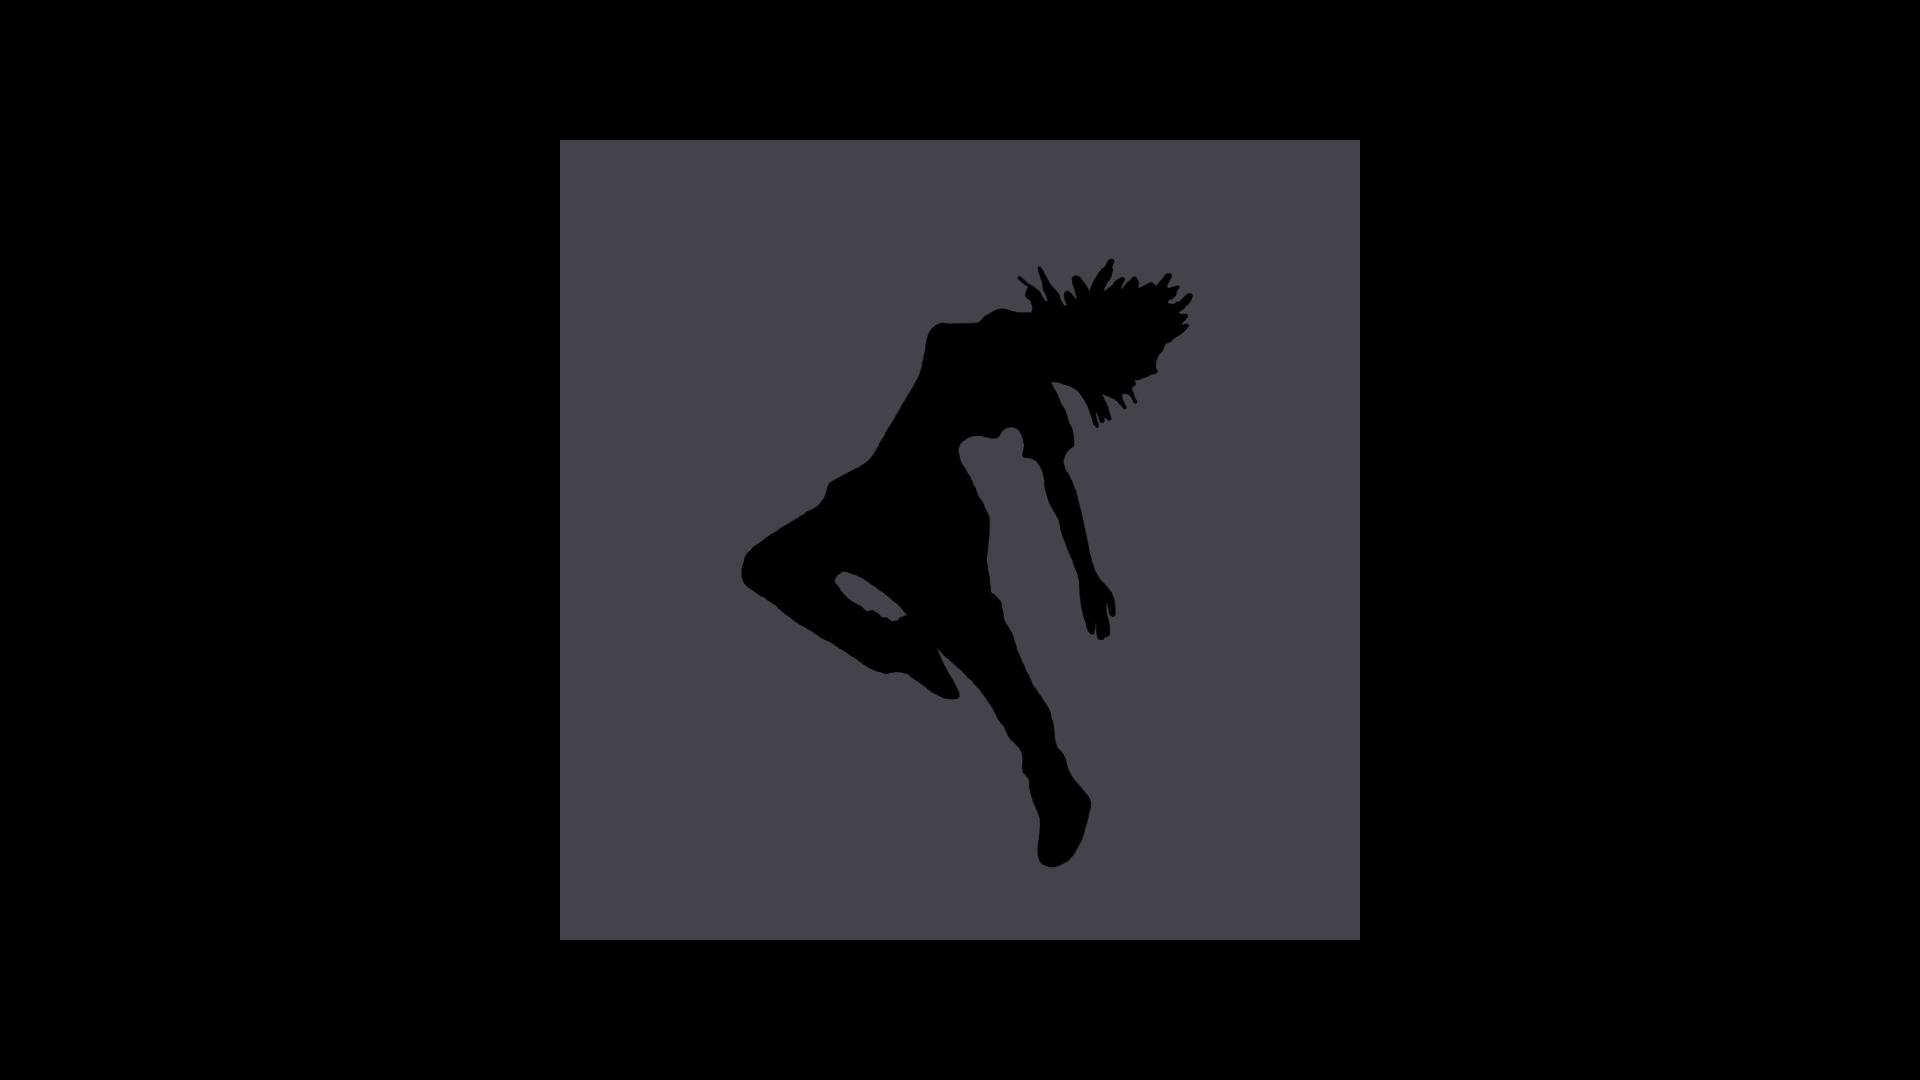 Shadowdancer Update: New Dark Sounds